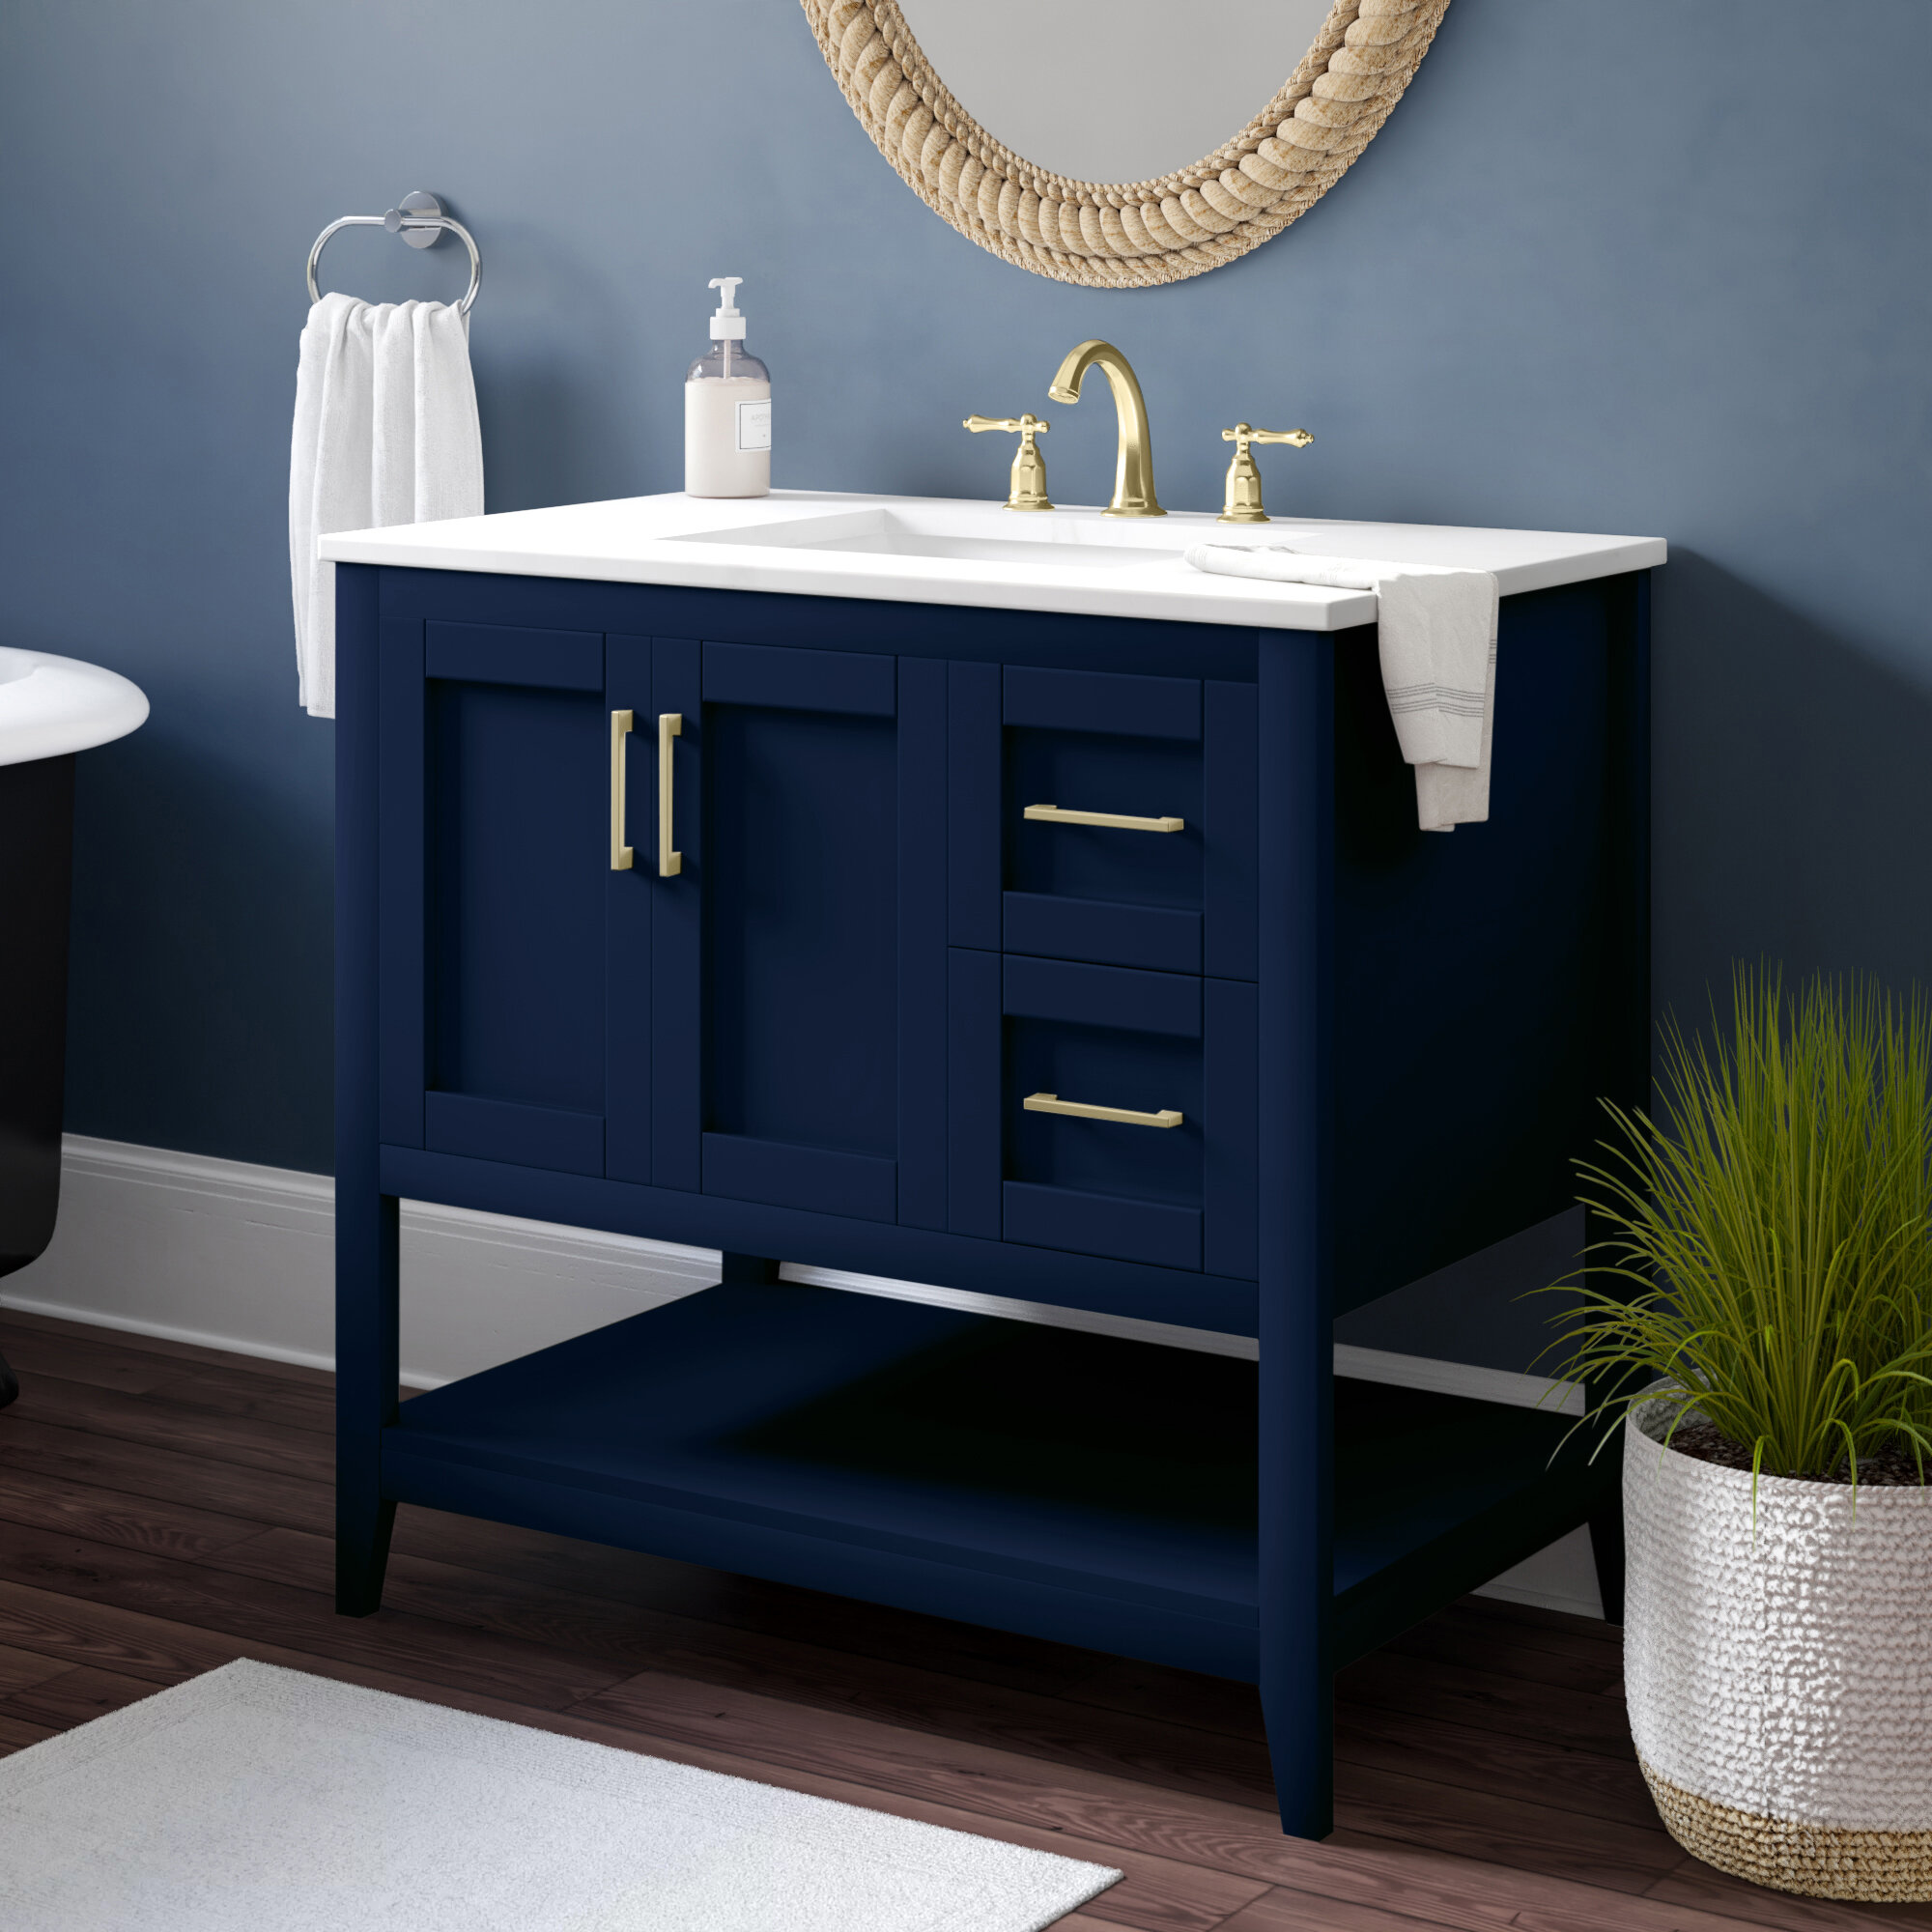 Beachcrest Home Caoimhe 36 Single Bathroom Vanity Set Reviews Wayfair